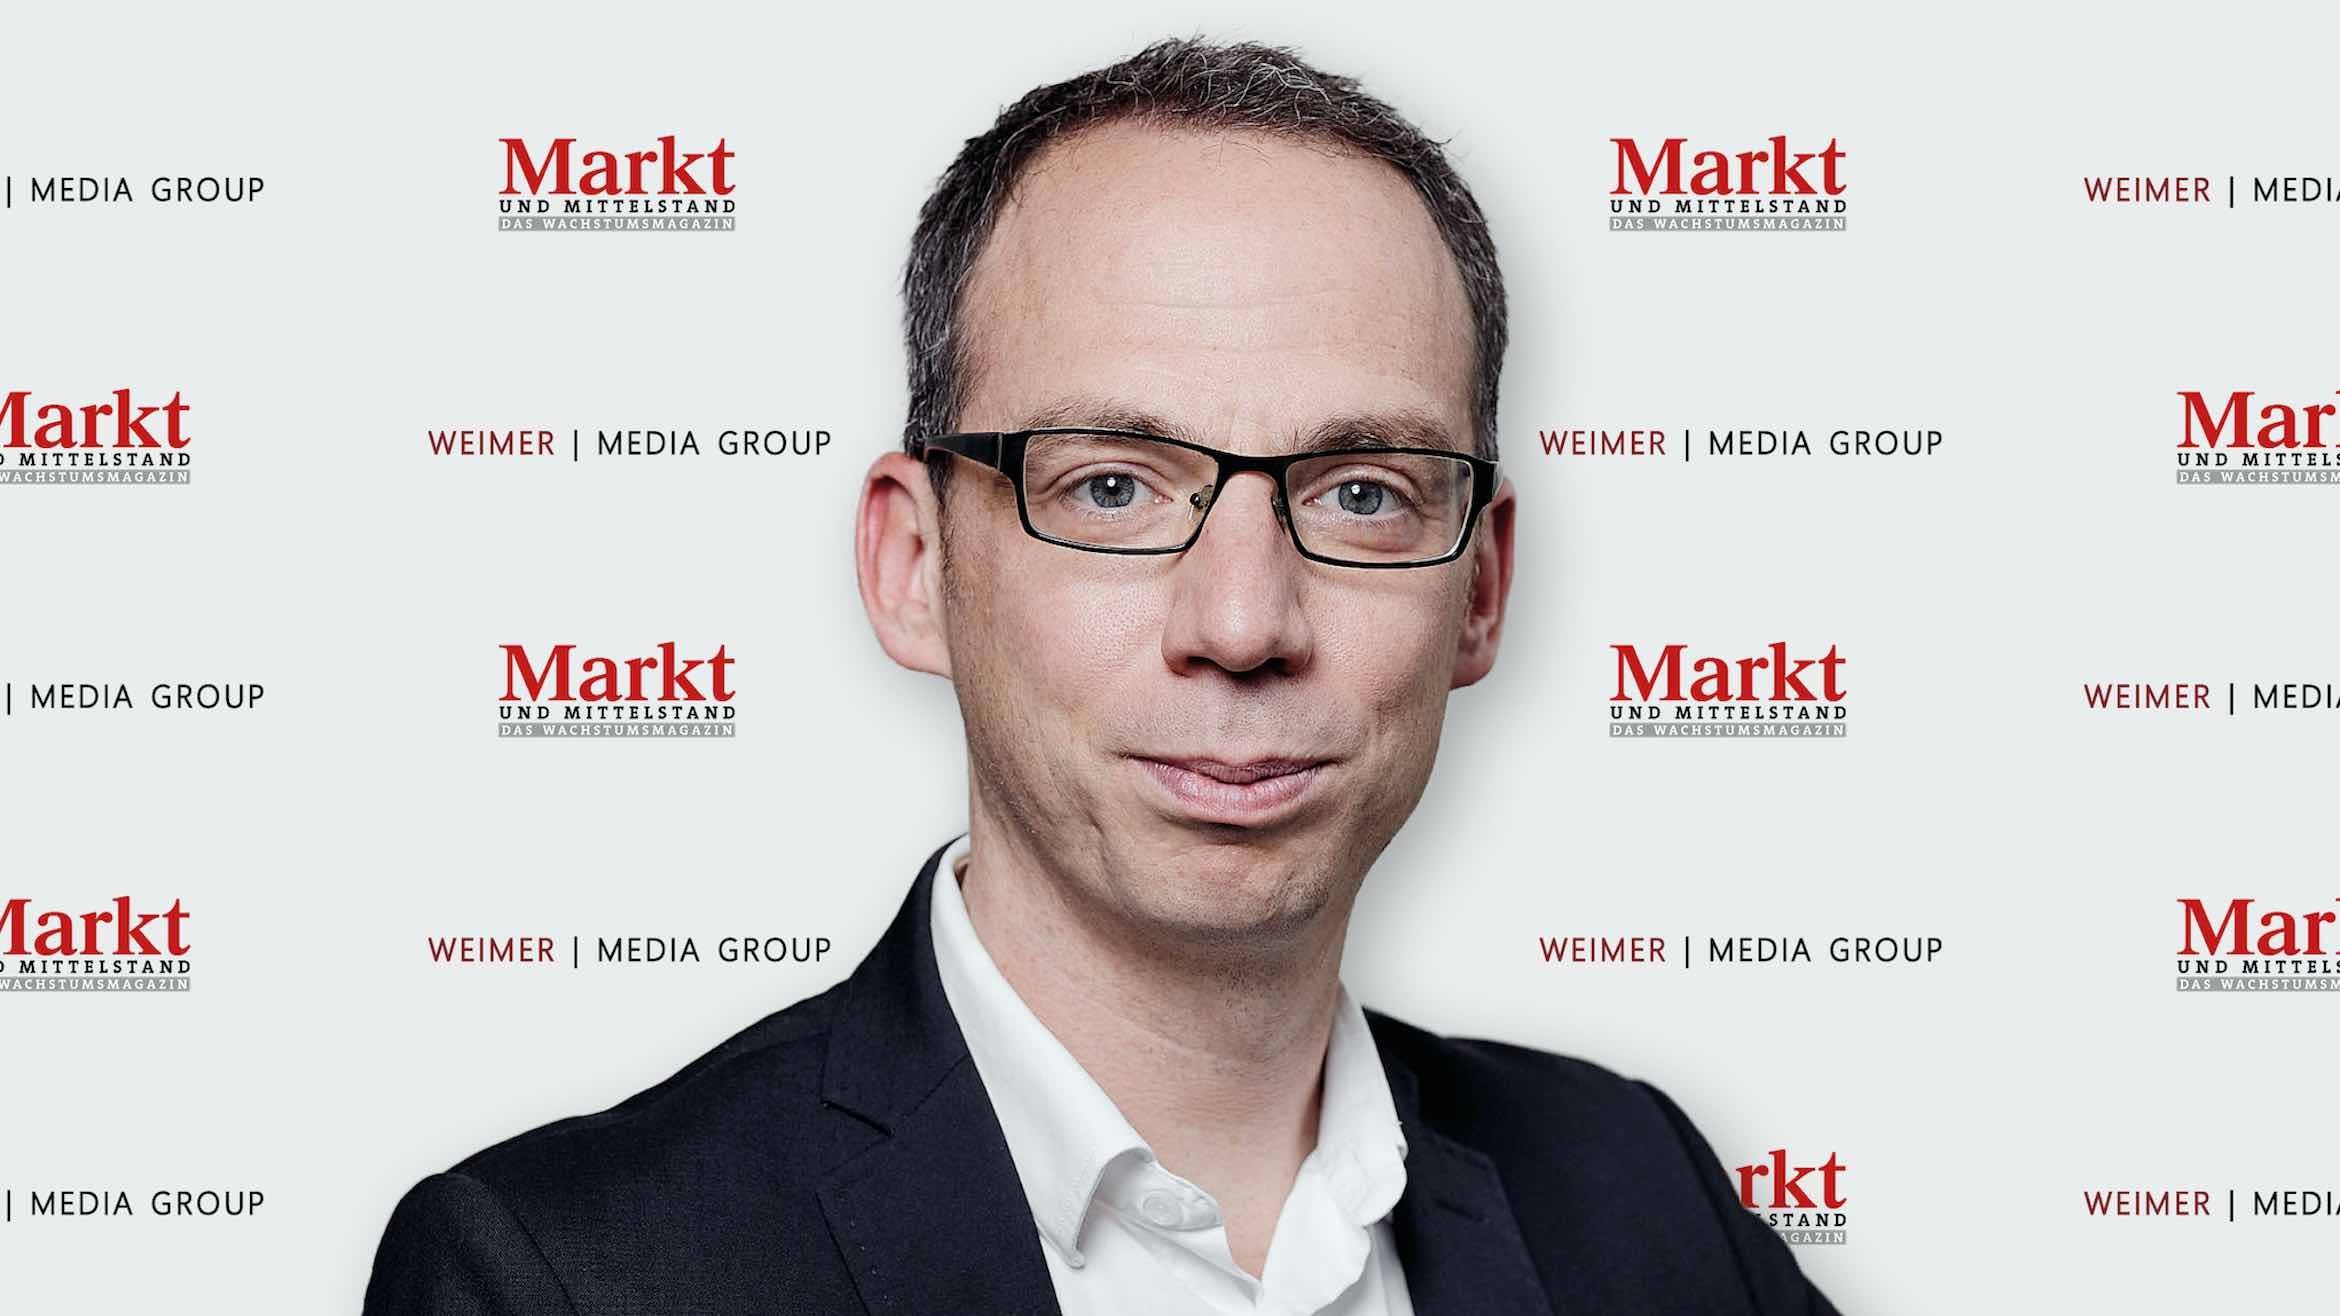 Wirtschaftsjournalist Sven Prange ist jetzt Chefredakteur von "Markt und Mittelstand" –